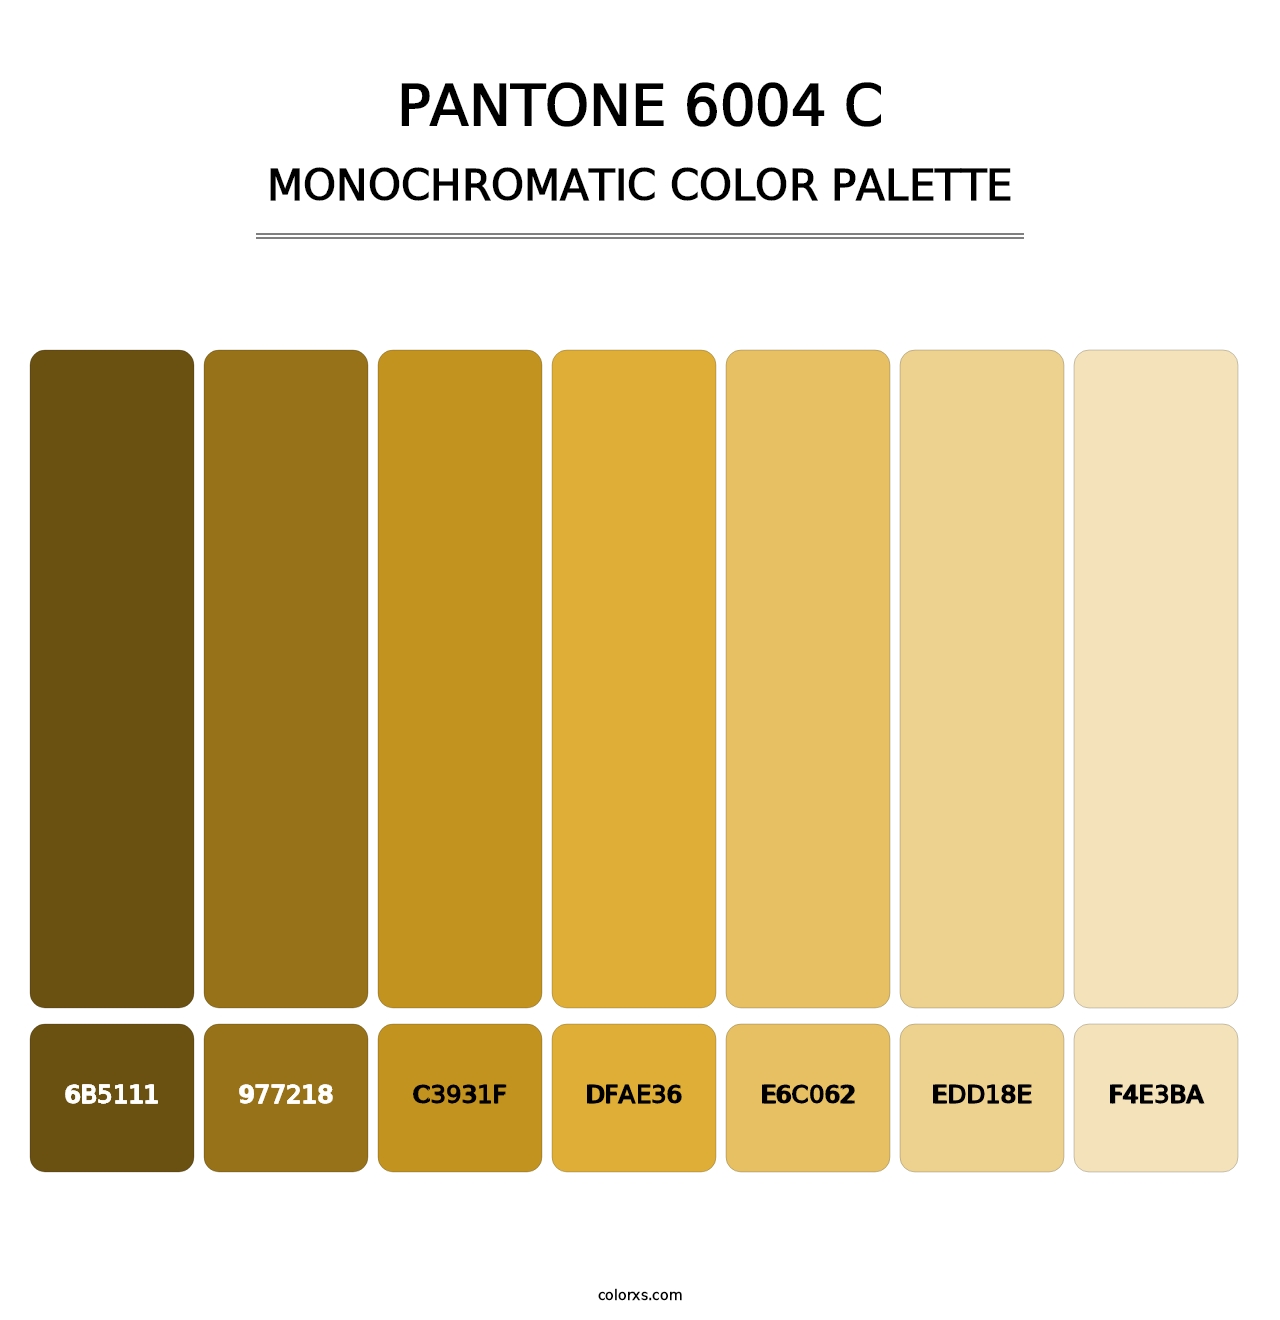 PANTONE 6004 C - Monochromatic Color Palette